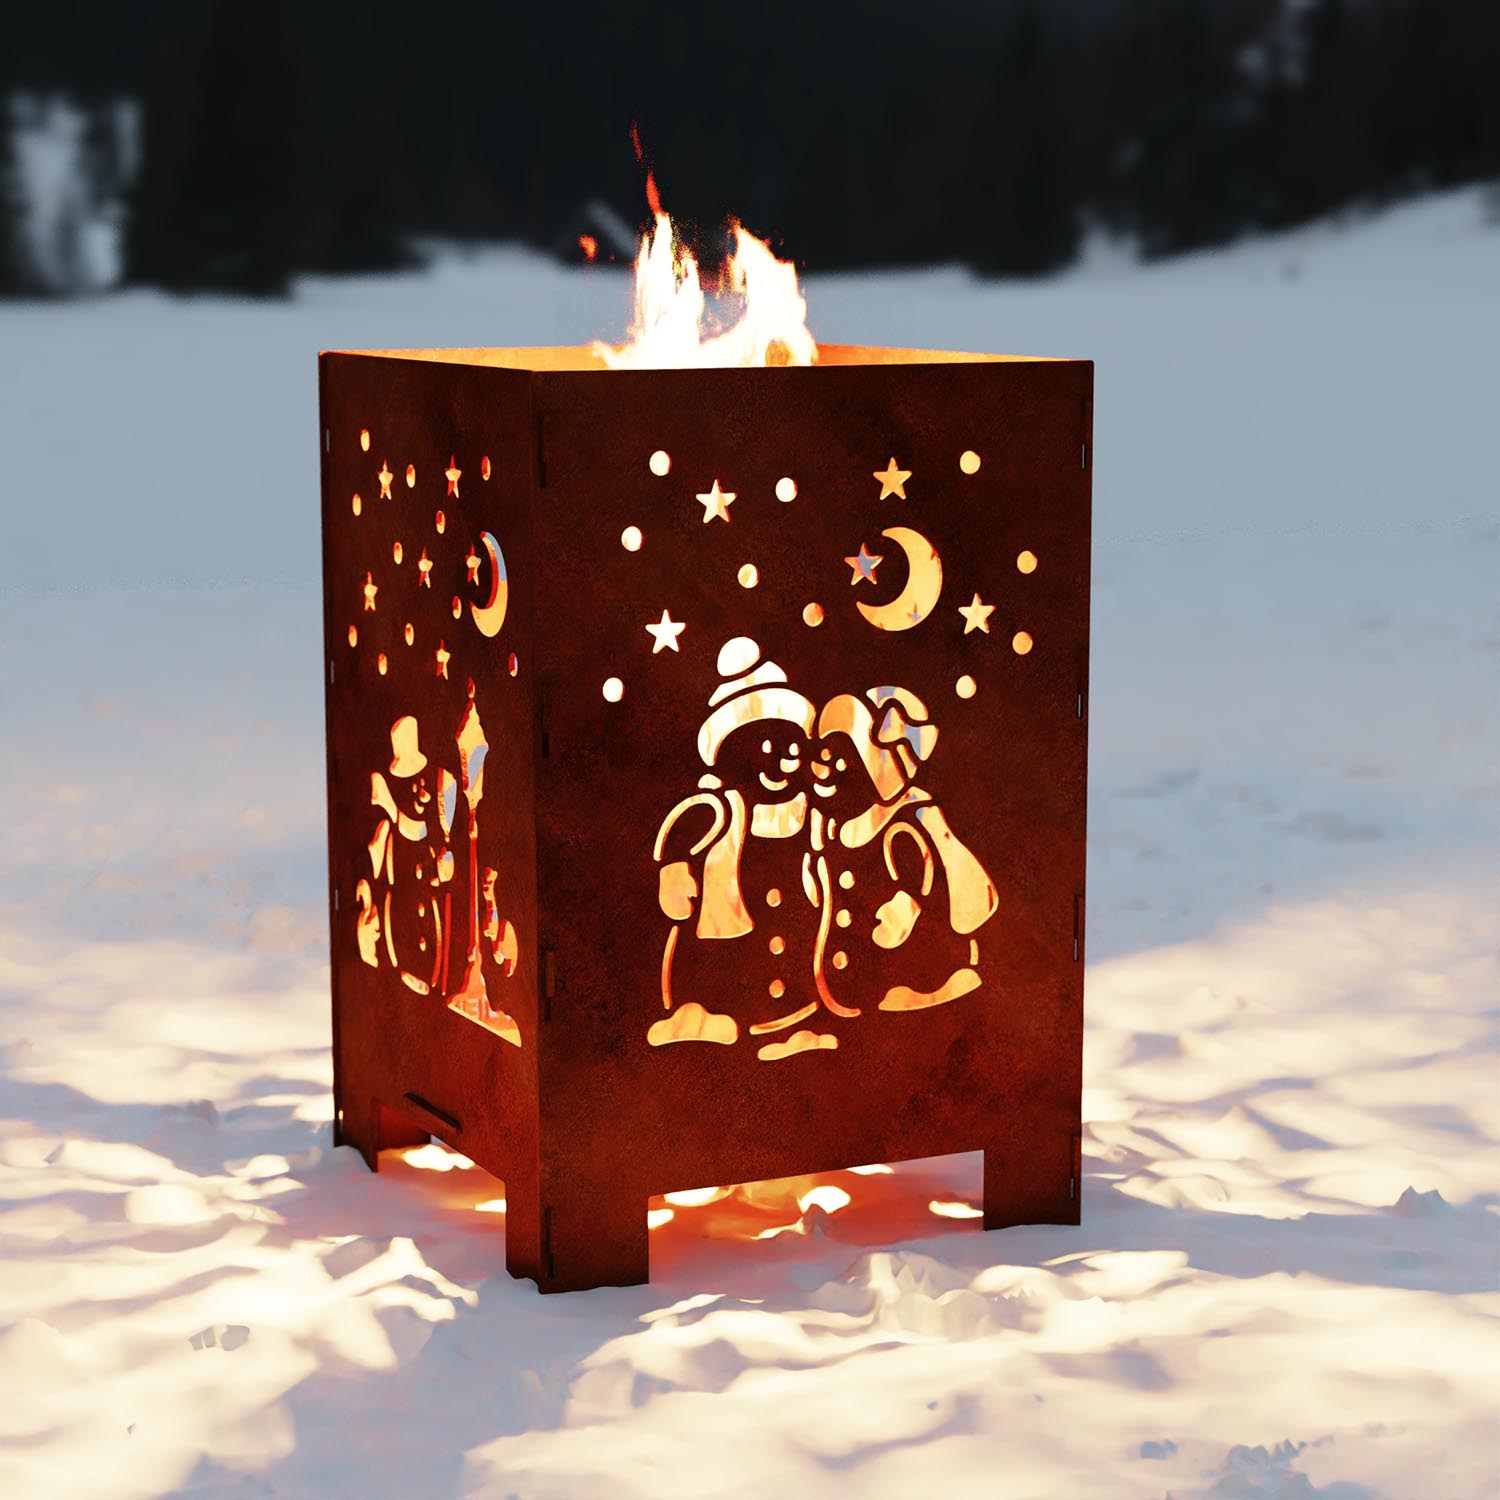 Feuerkorb aus Stahl, Motiv Schneemann, 40 x 40 x 60 cm, Materialstärke 4 mm